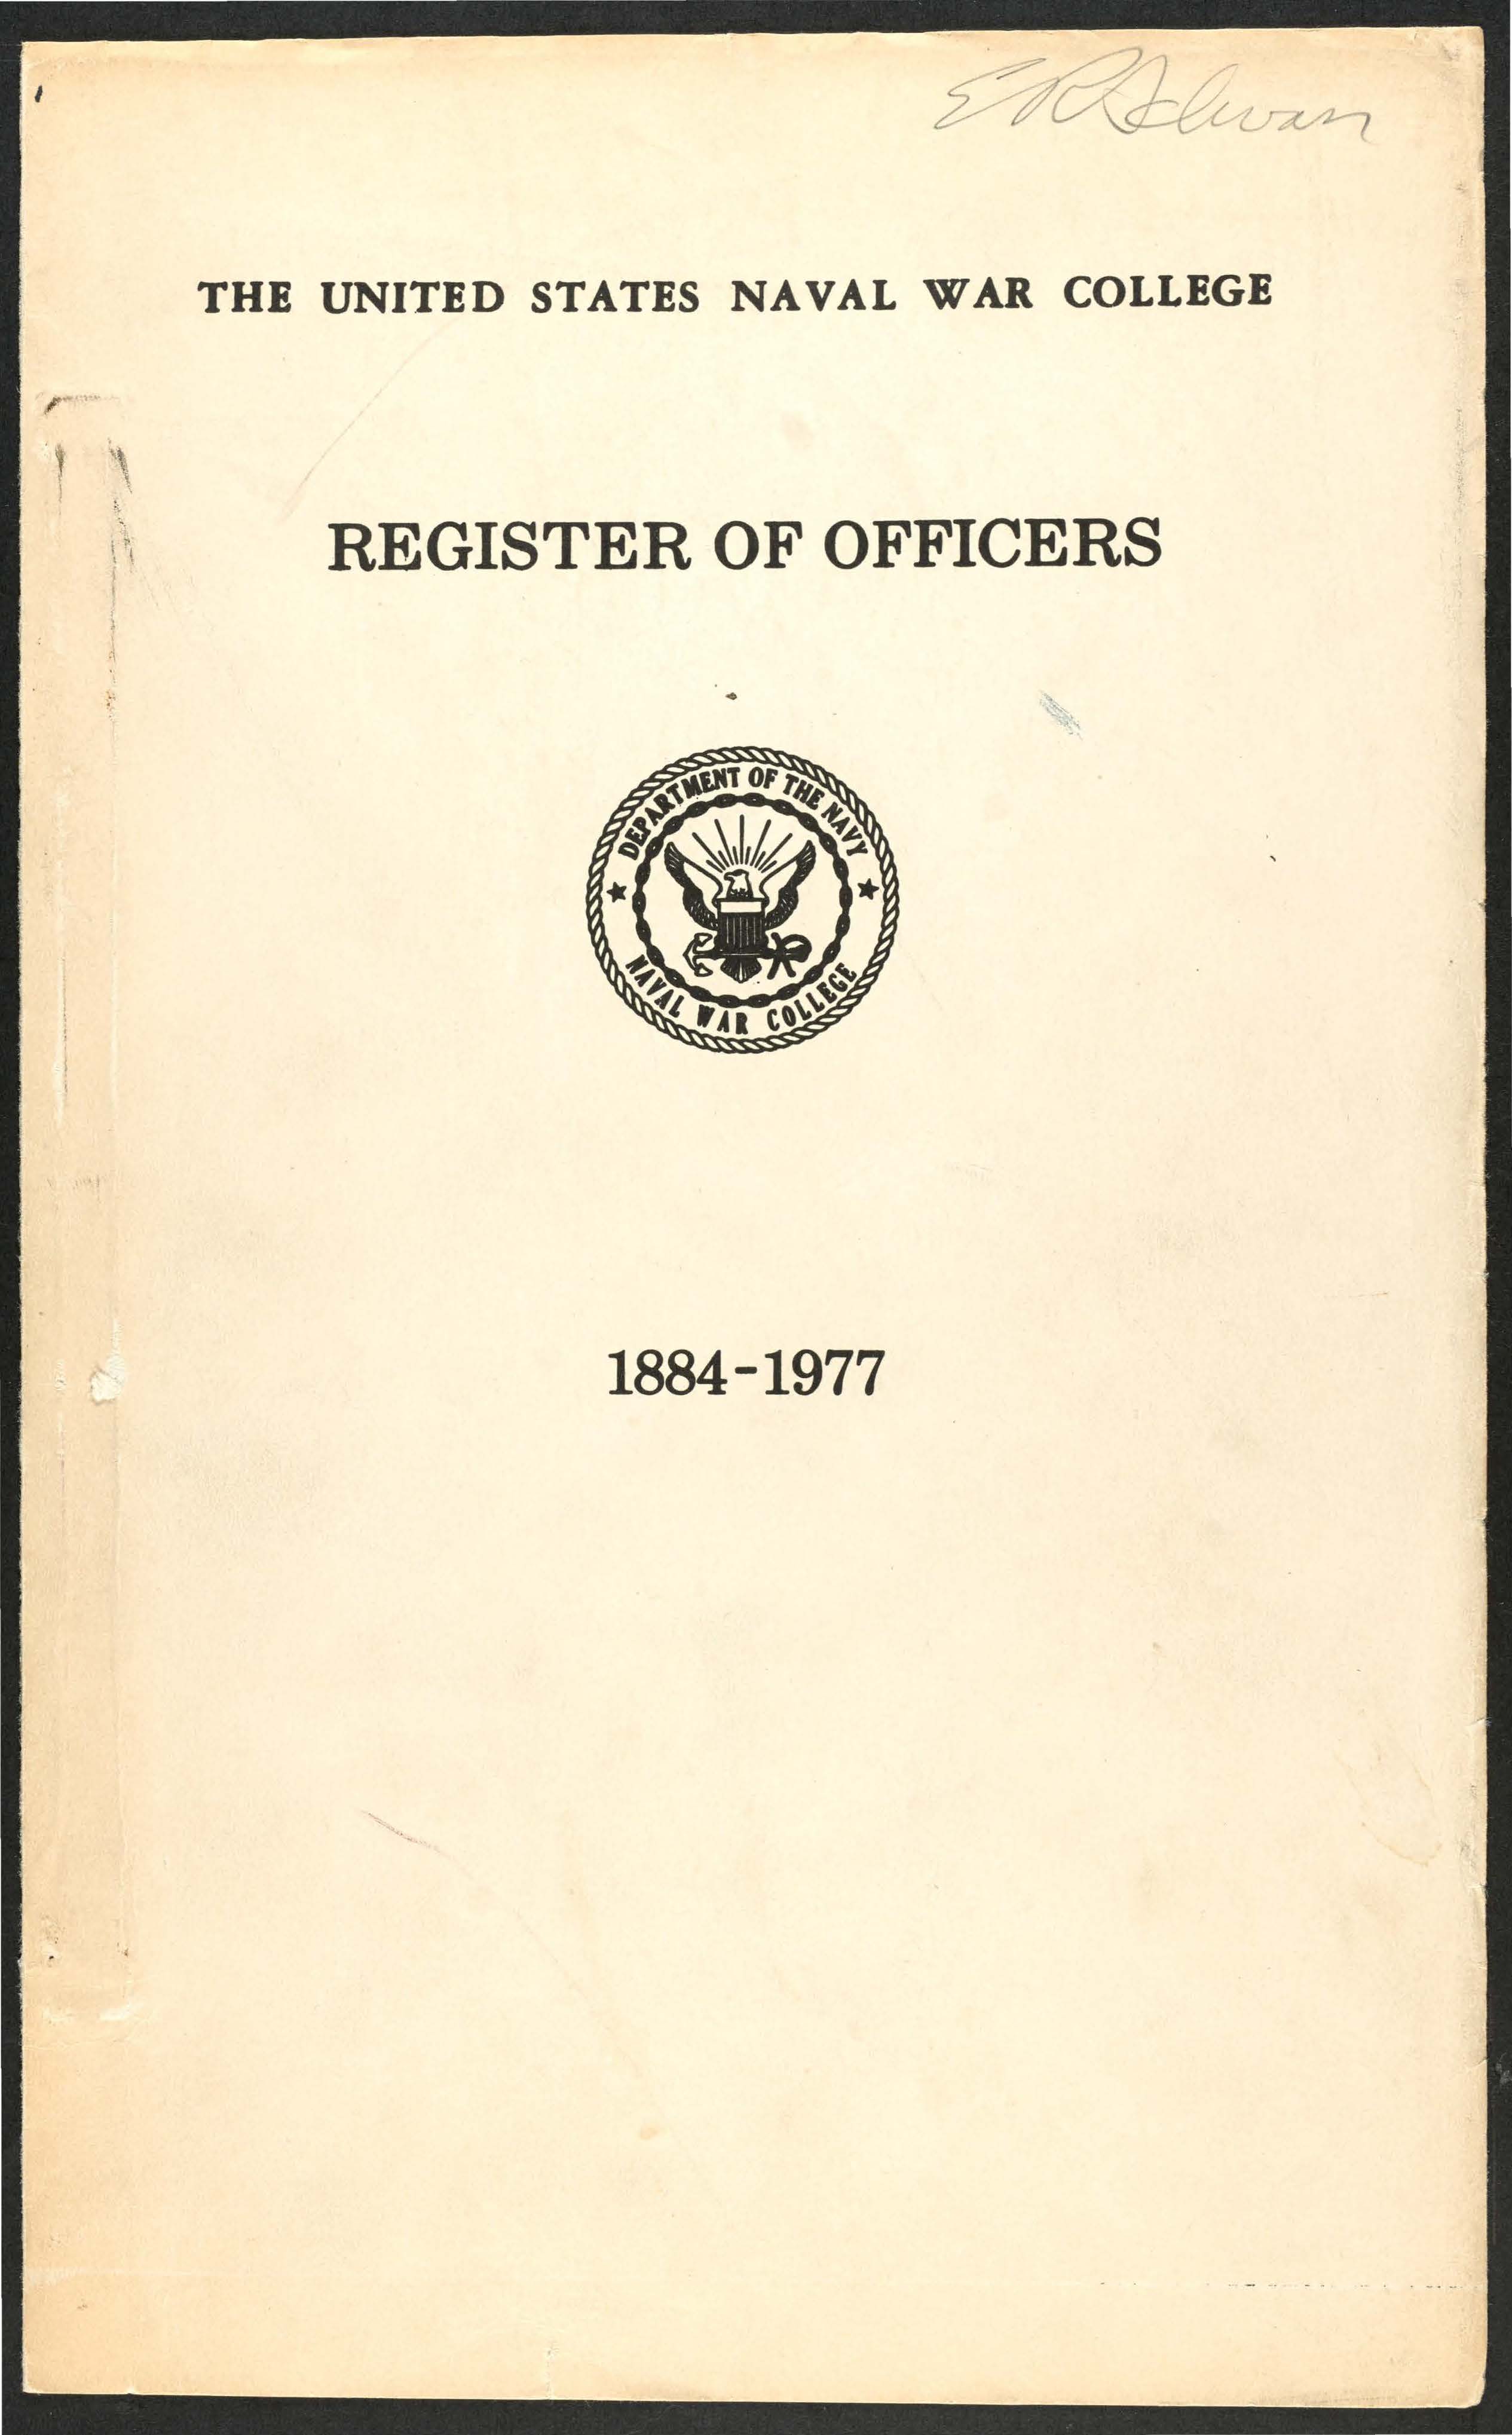 Register of Officers, 1884-1977